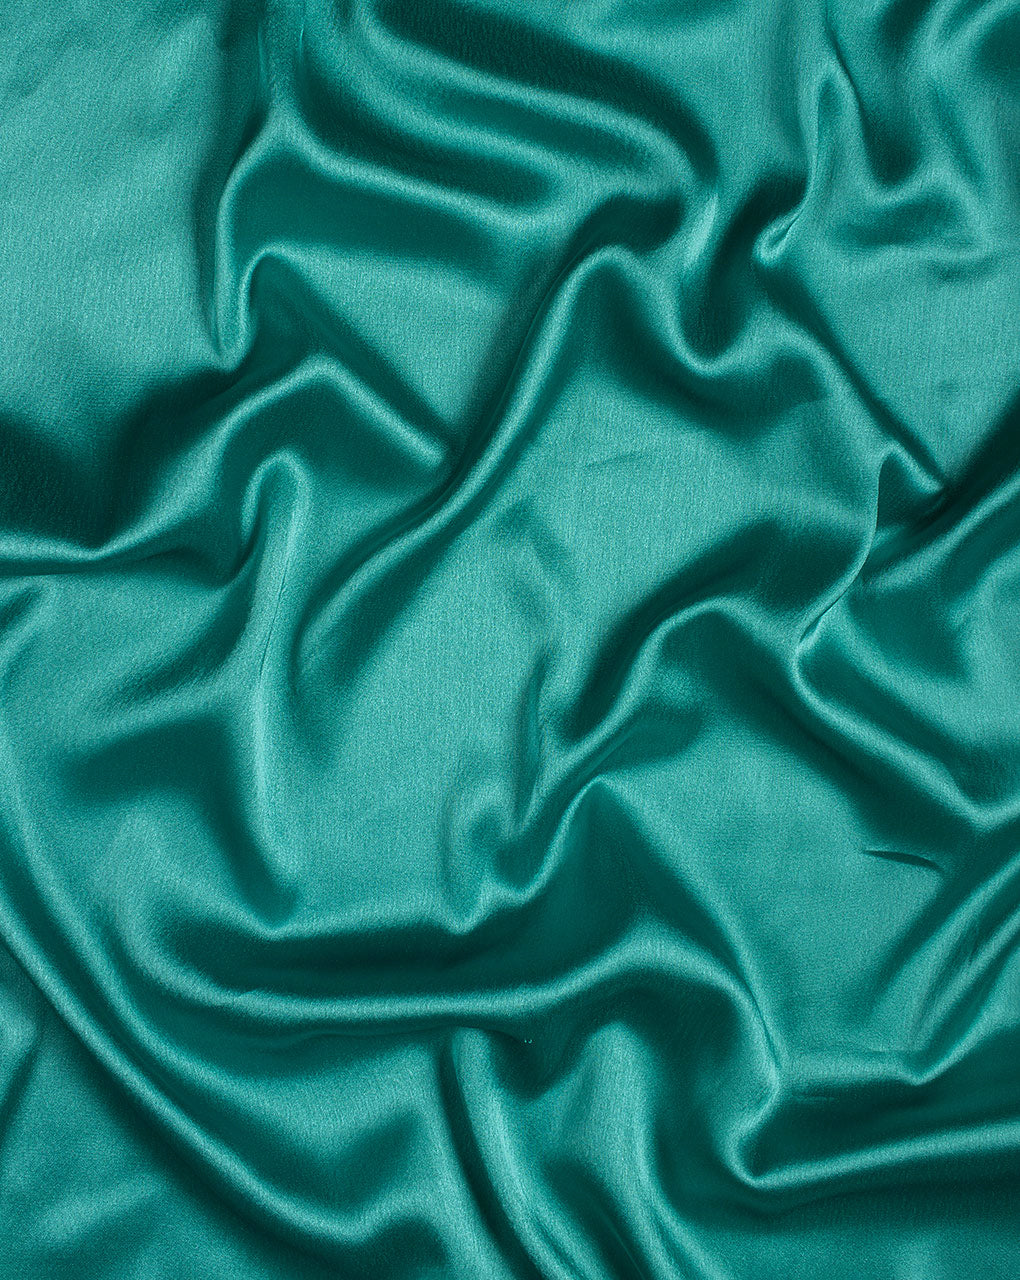 Teal Plain Satin Fabric